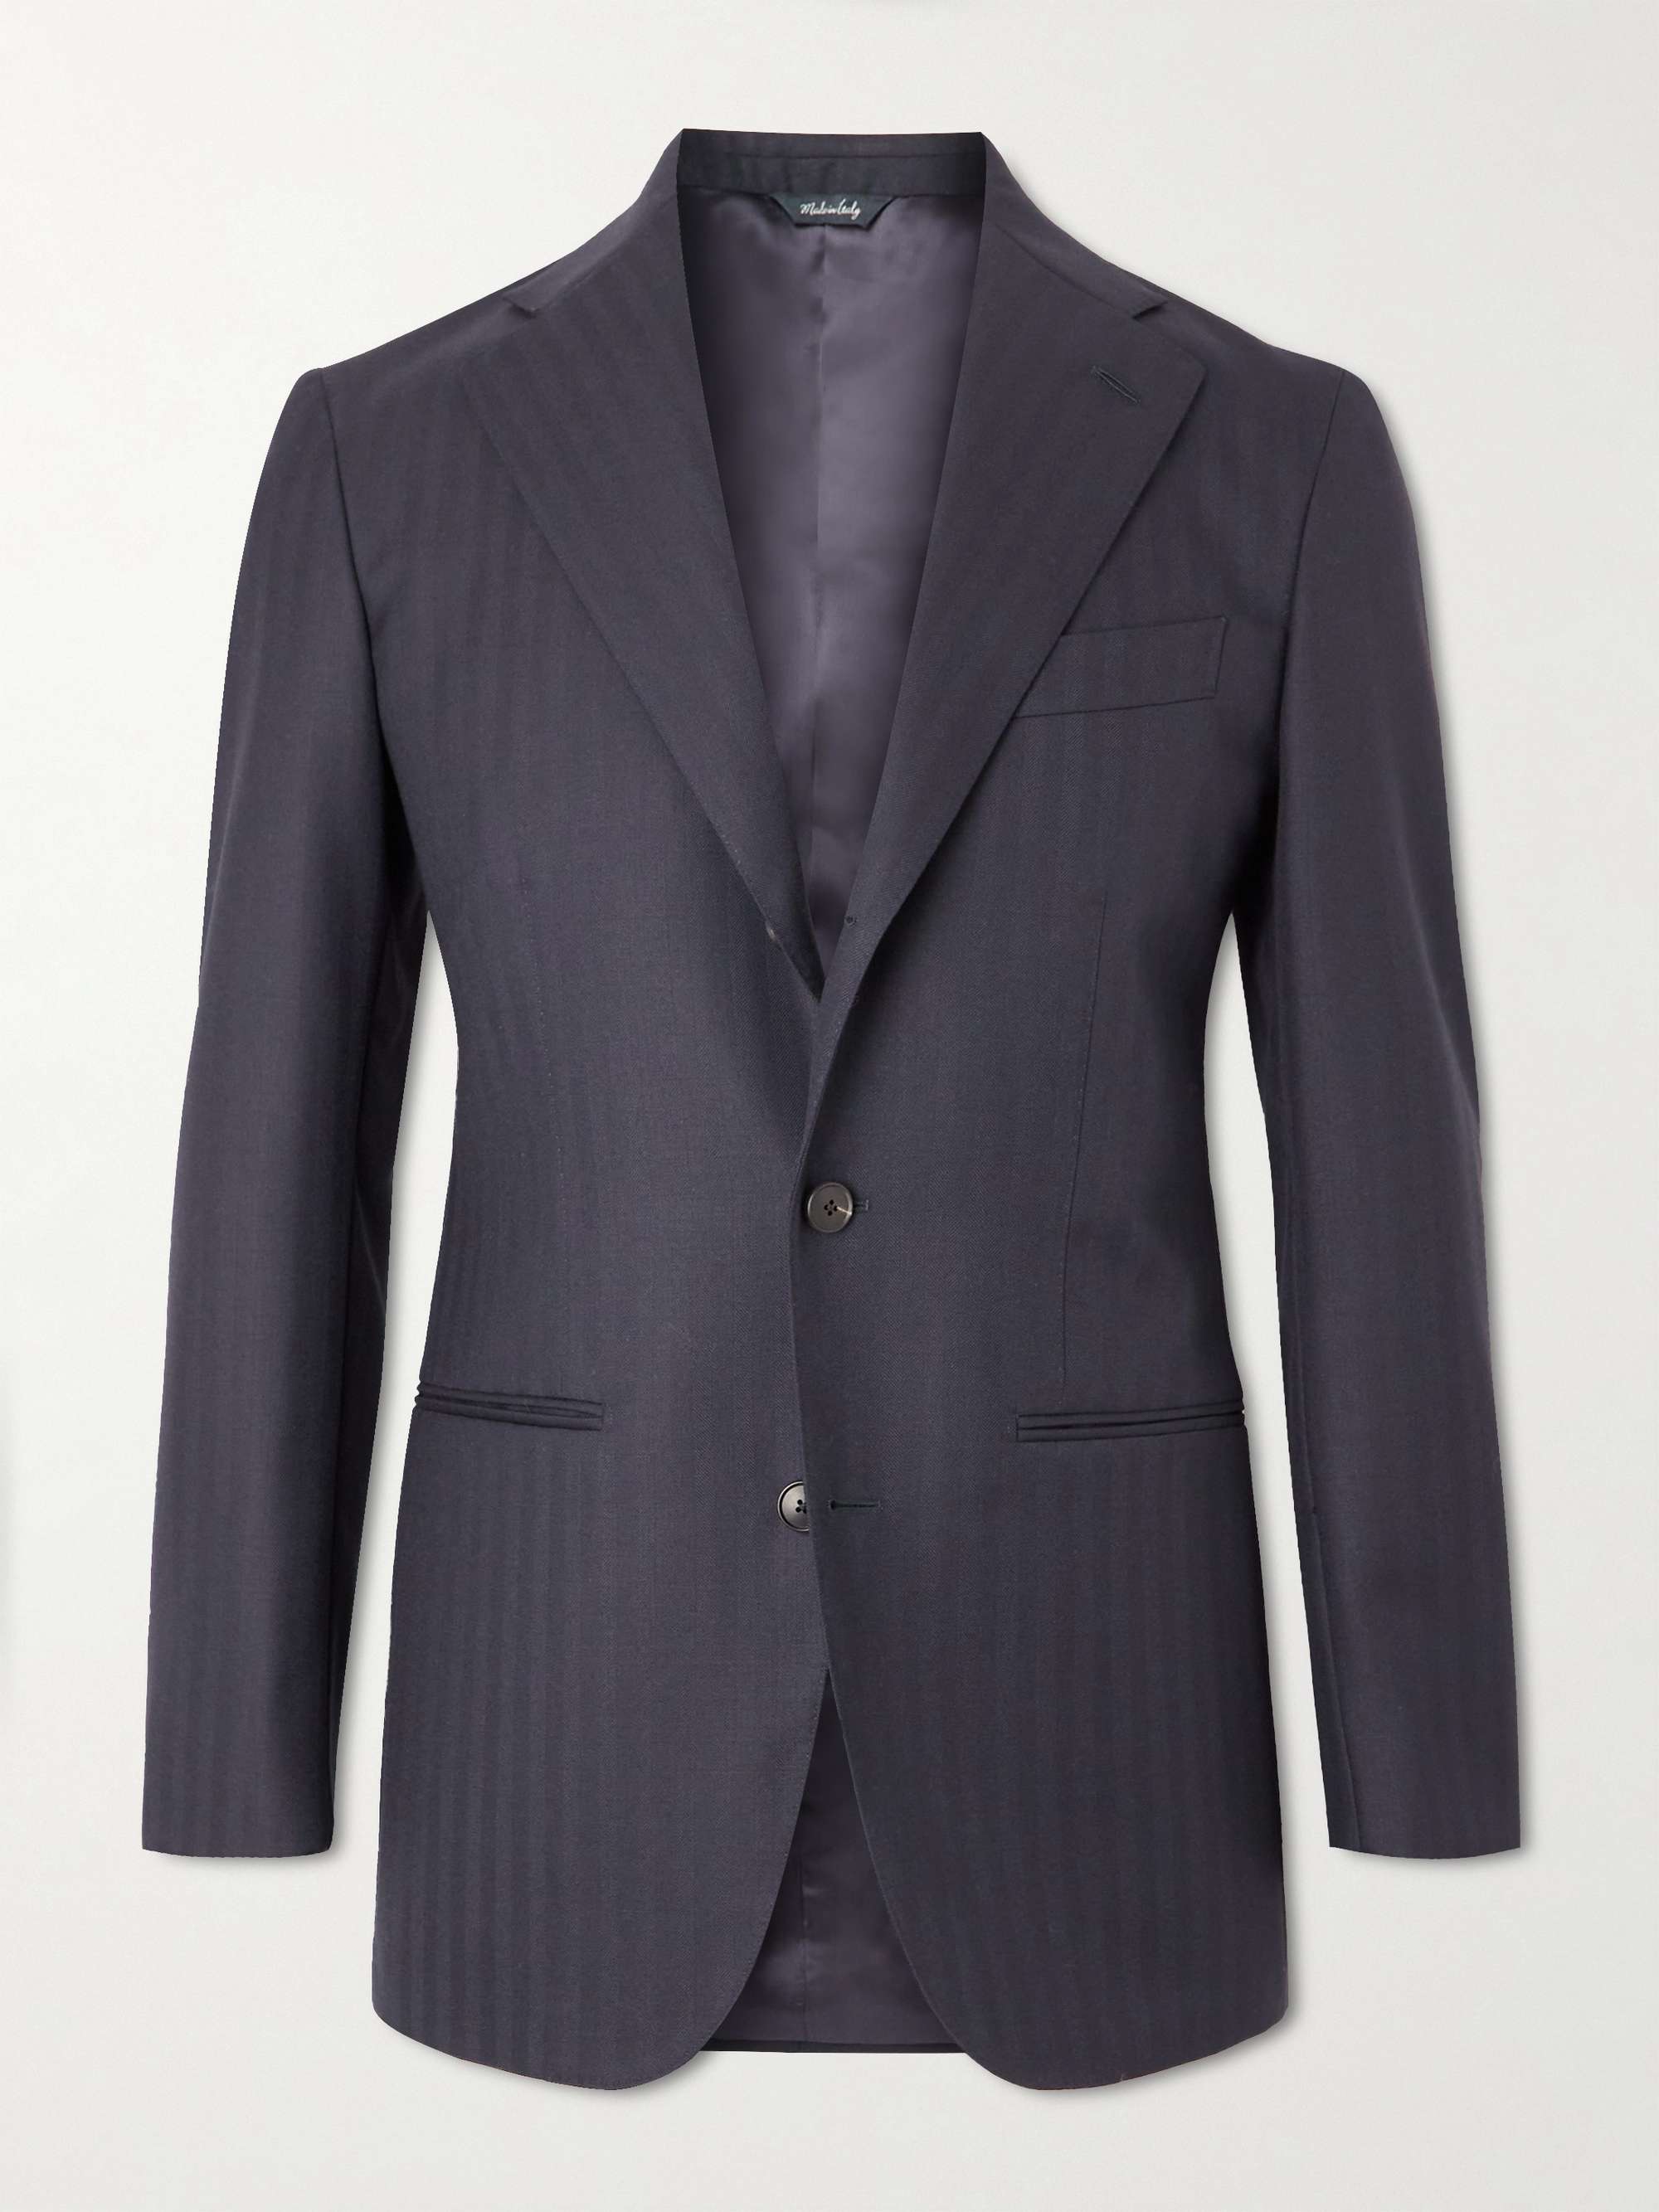 SAMAN AMEL Herringbone Wool Suit Jacket